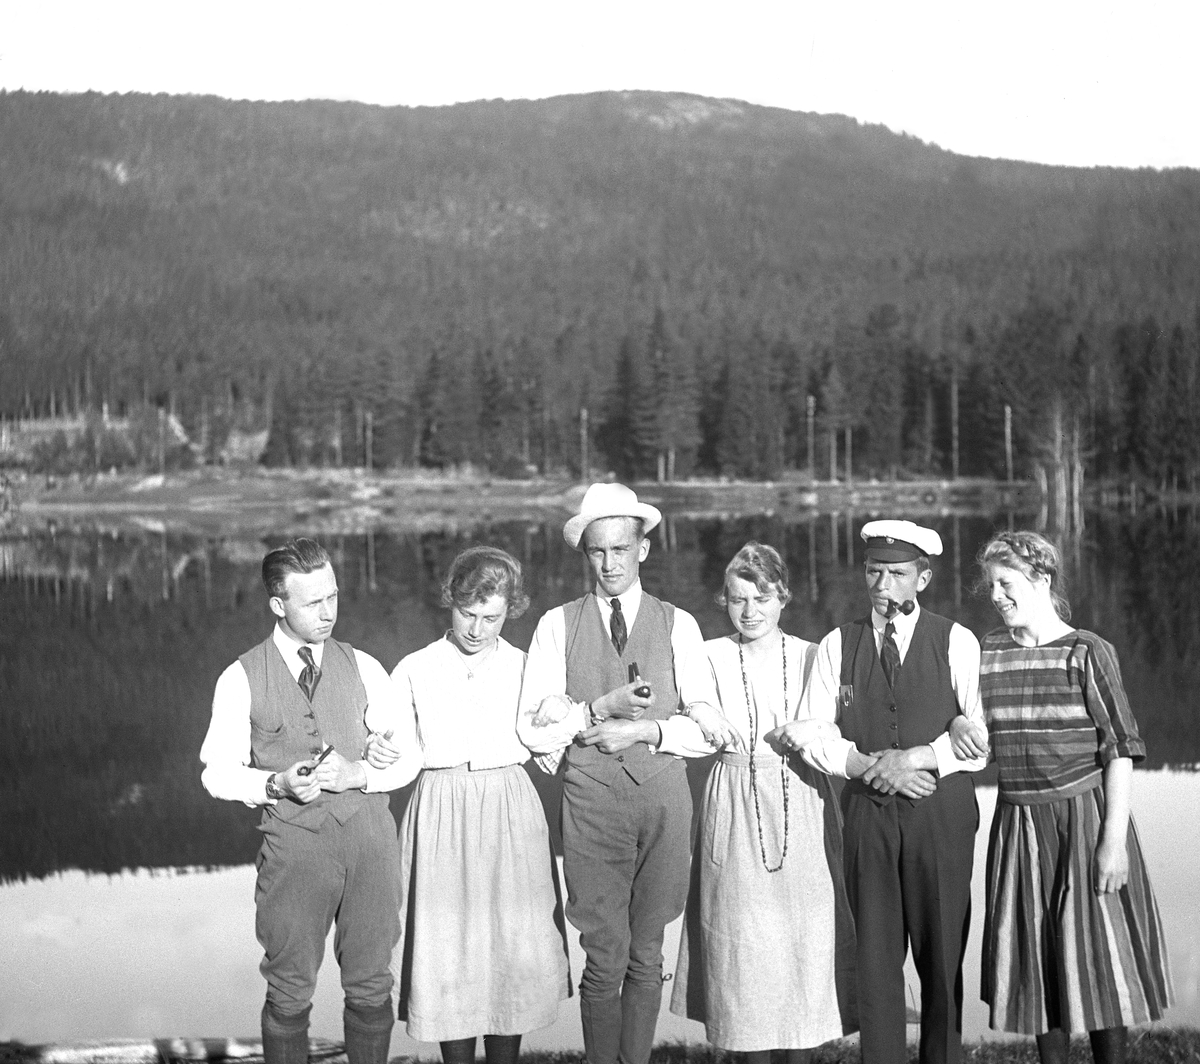 Seks unge mennesker stiller til fotografering før avreise fra feriested, antagelig ved Harestuvatnet. Fritjof Arentz nummer to fra høyre. Fotografert 1921.